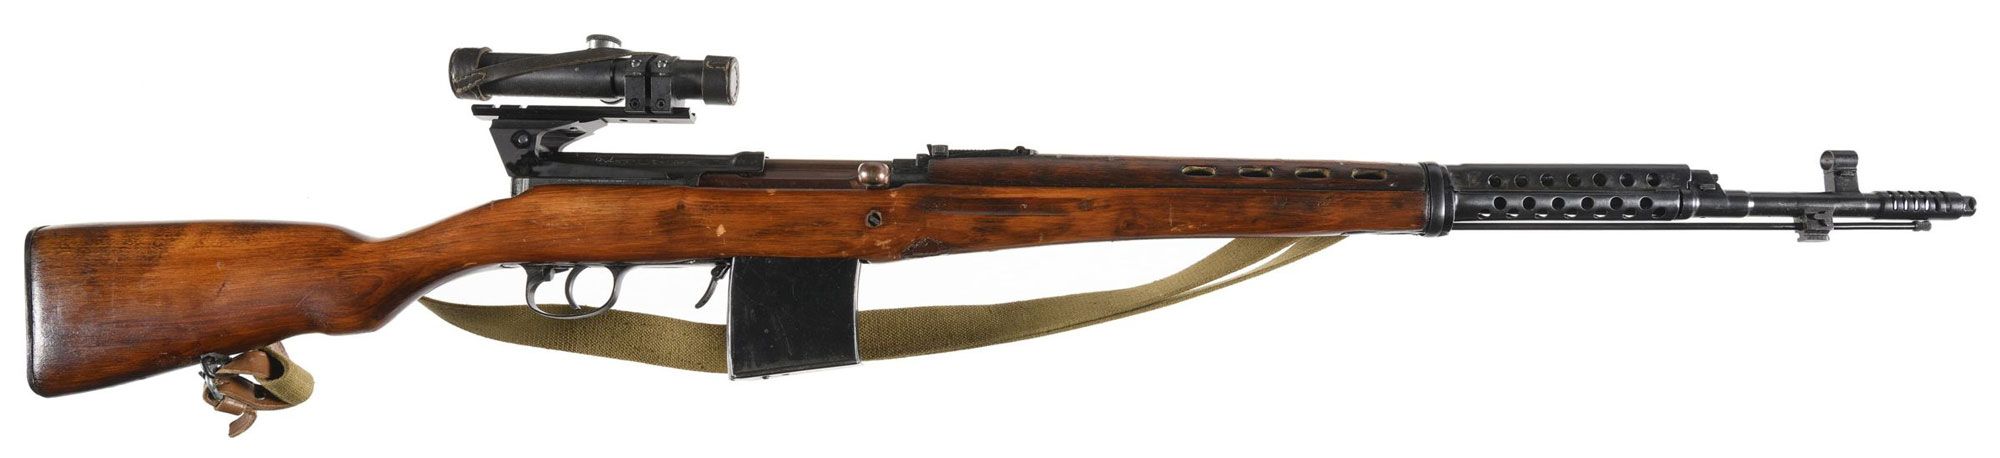 SVT40 sniper rifle